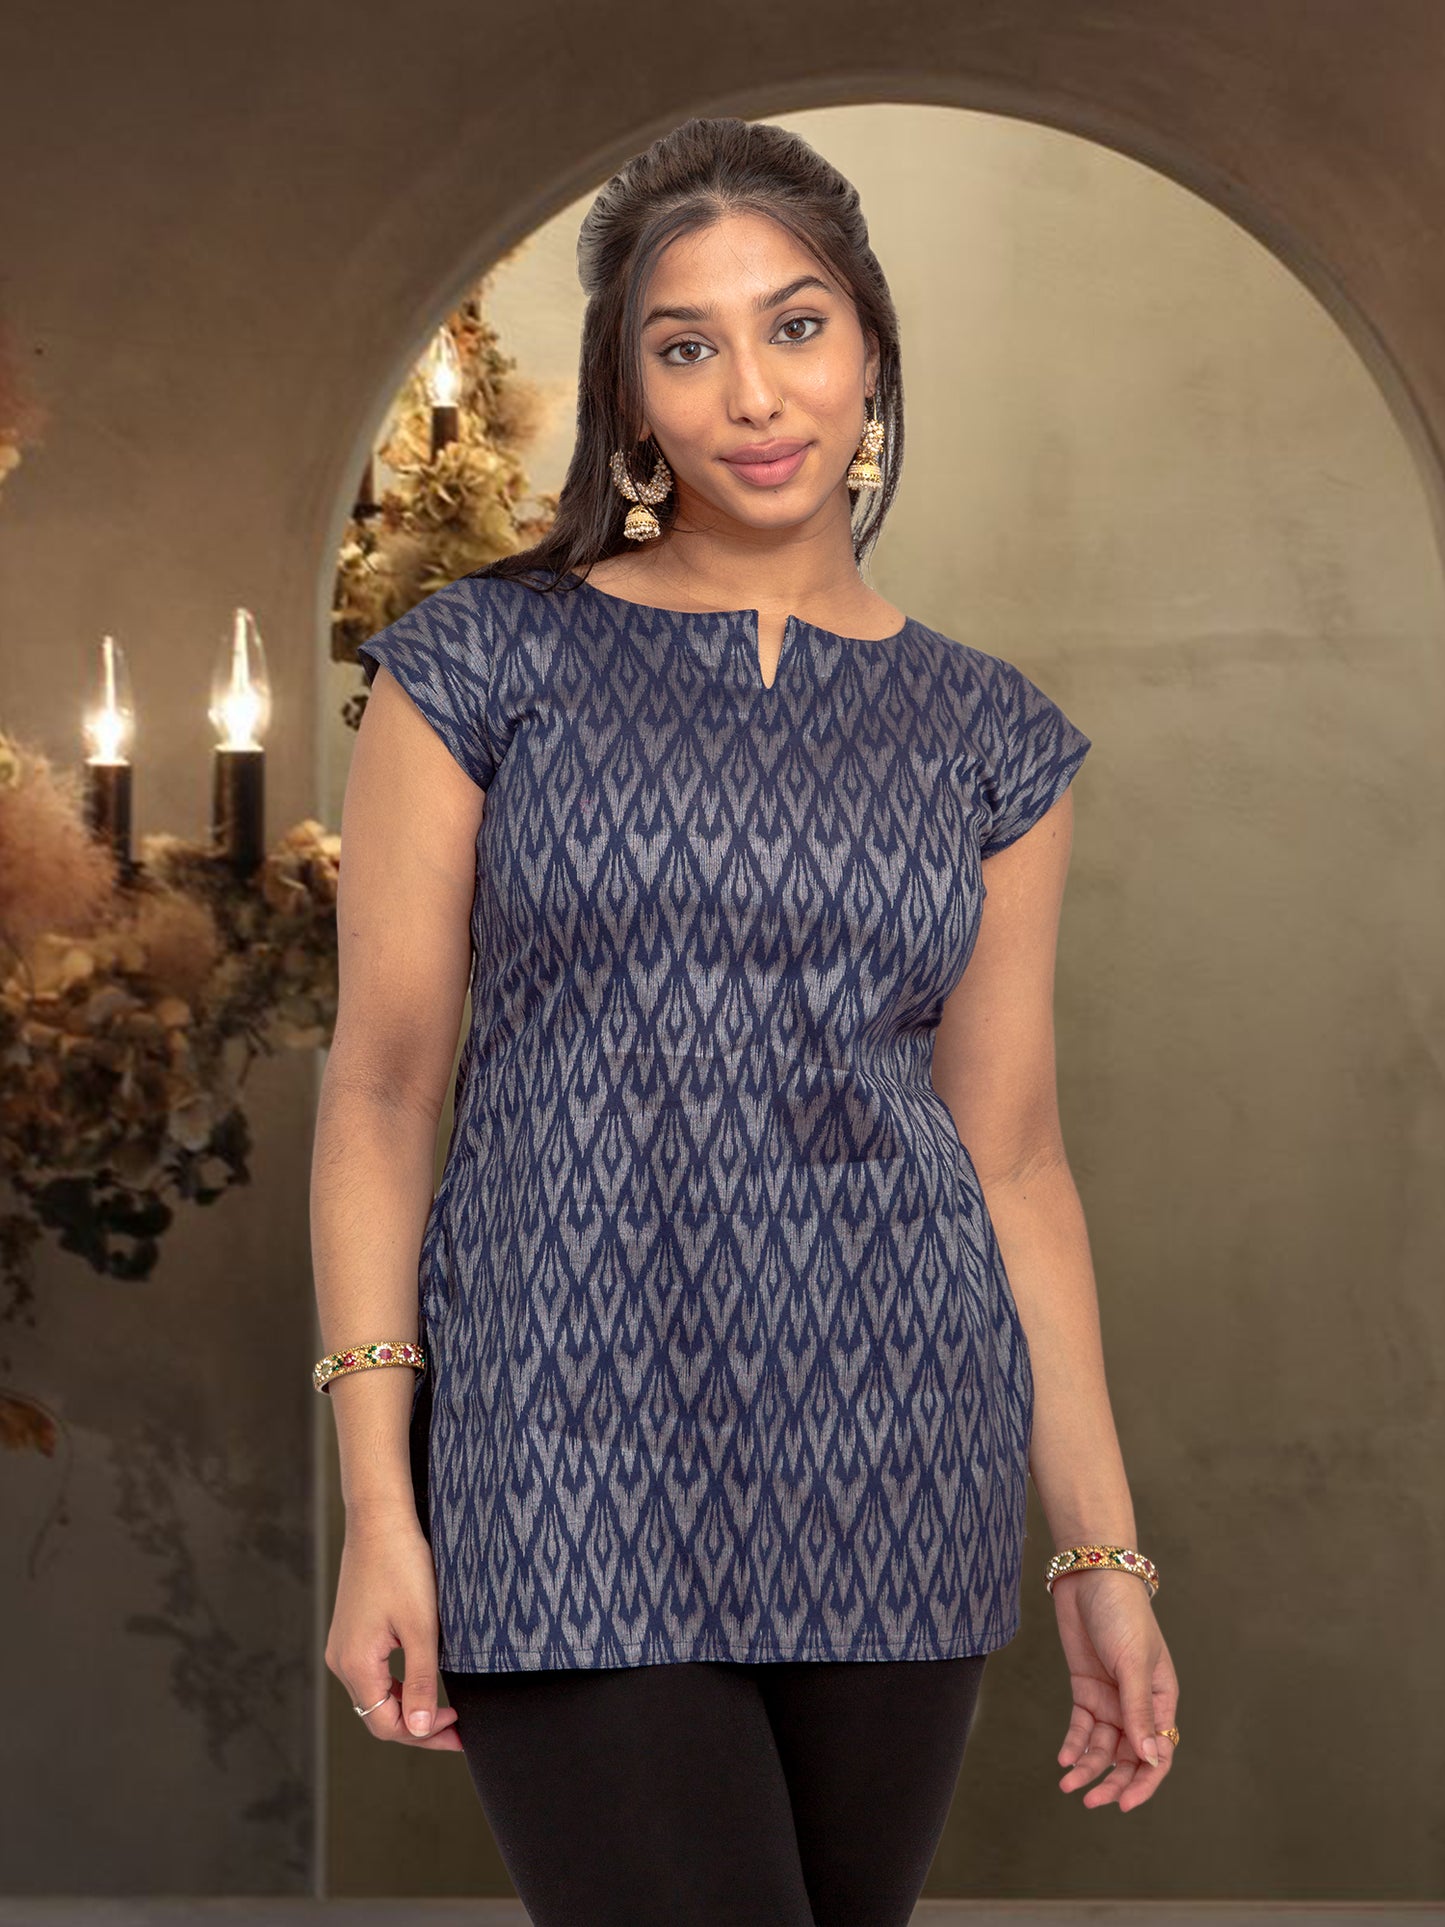 Midnight Blue Printed Short Top | Women's Tops | Modern Indian Wear  | Indian Attire For Women | Women's Tops | Indian Short Tops | Indian Wear for Women | Casual Indian Dress